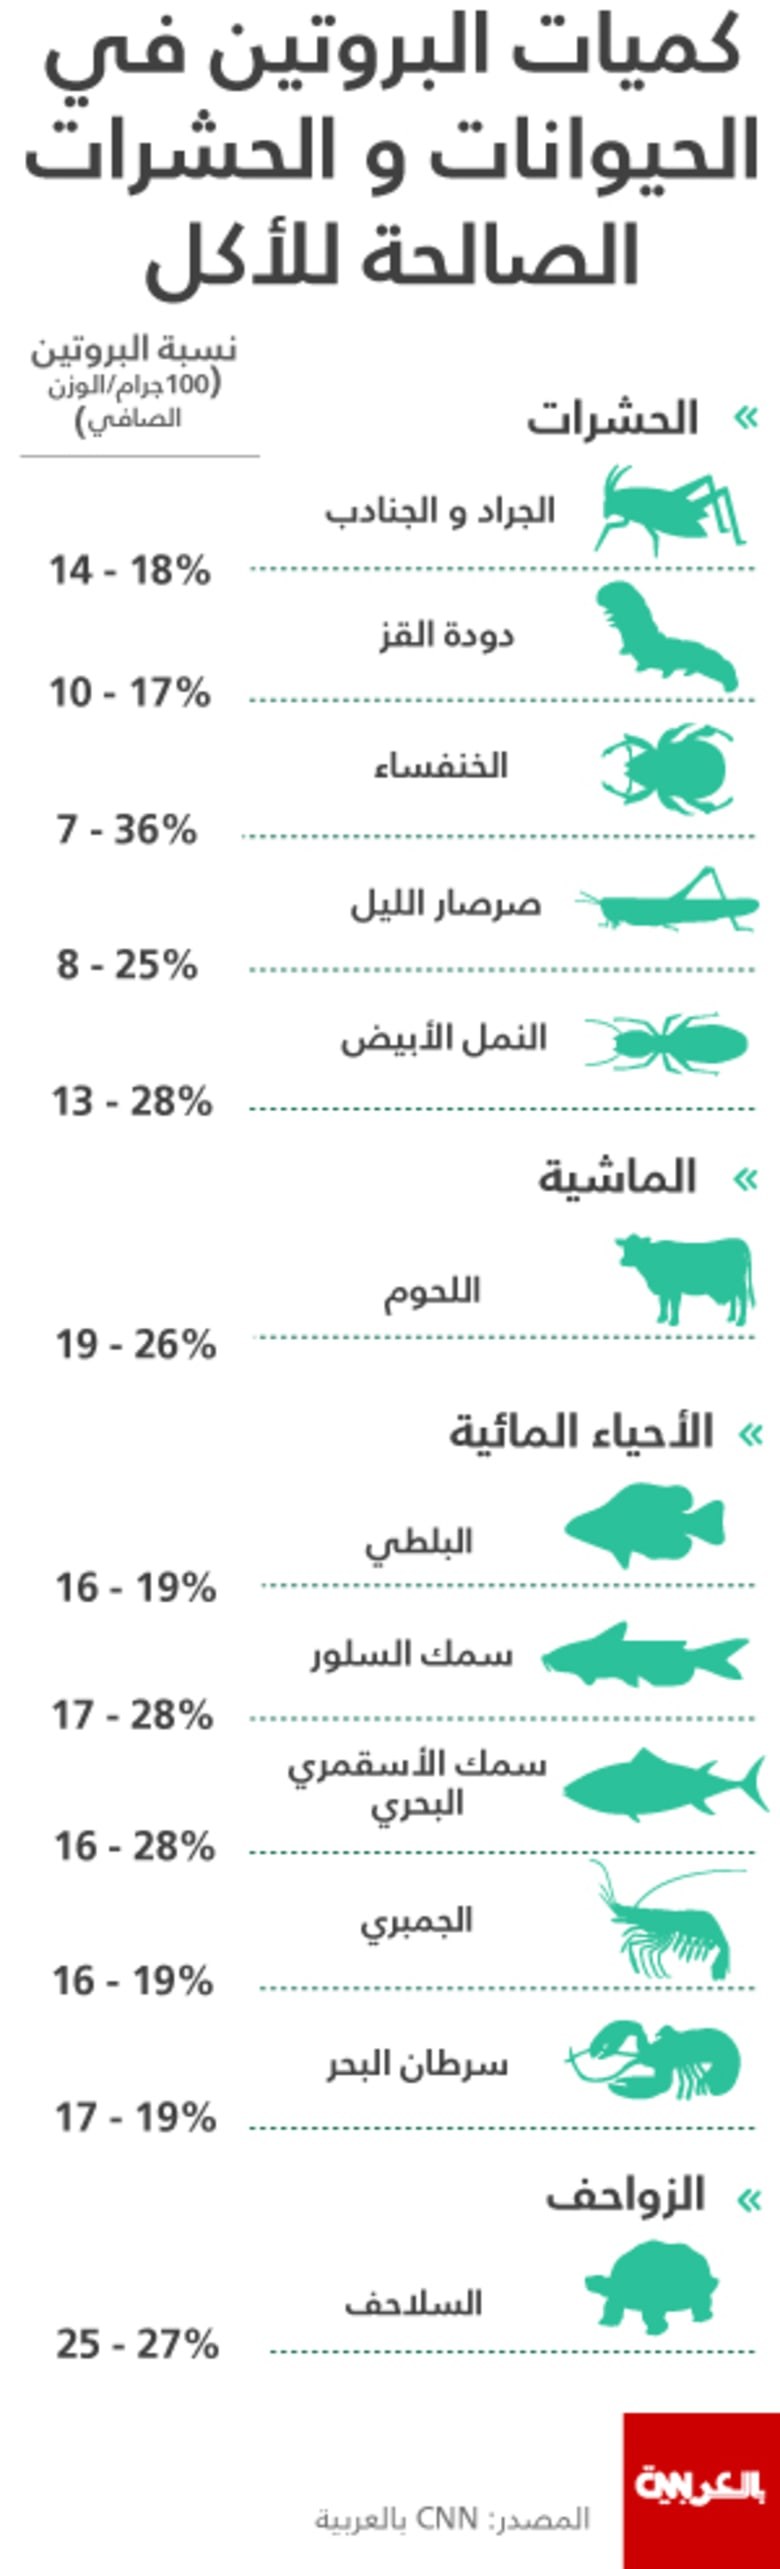 كميات البروتين في الحيوانات والحشرات الصالحة للأكل